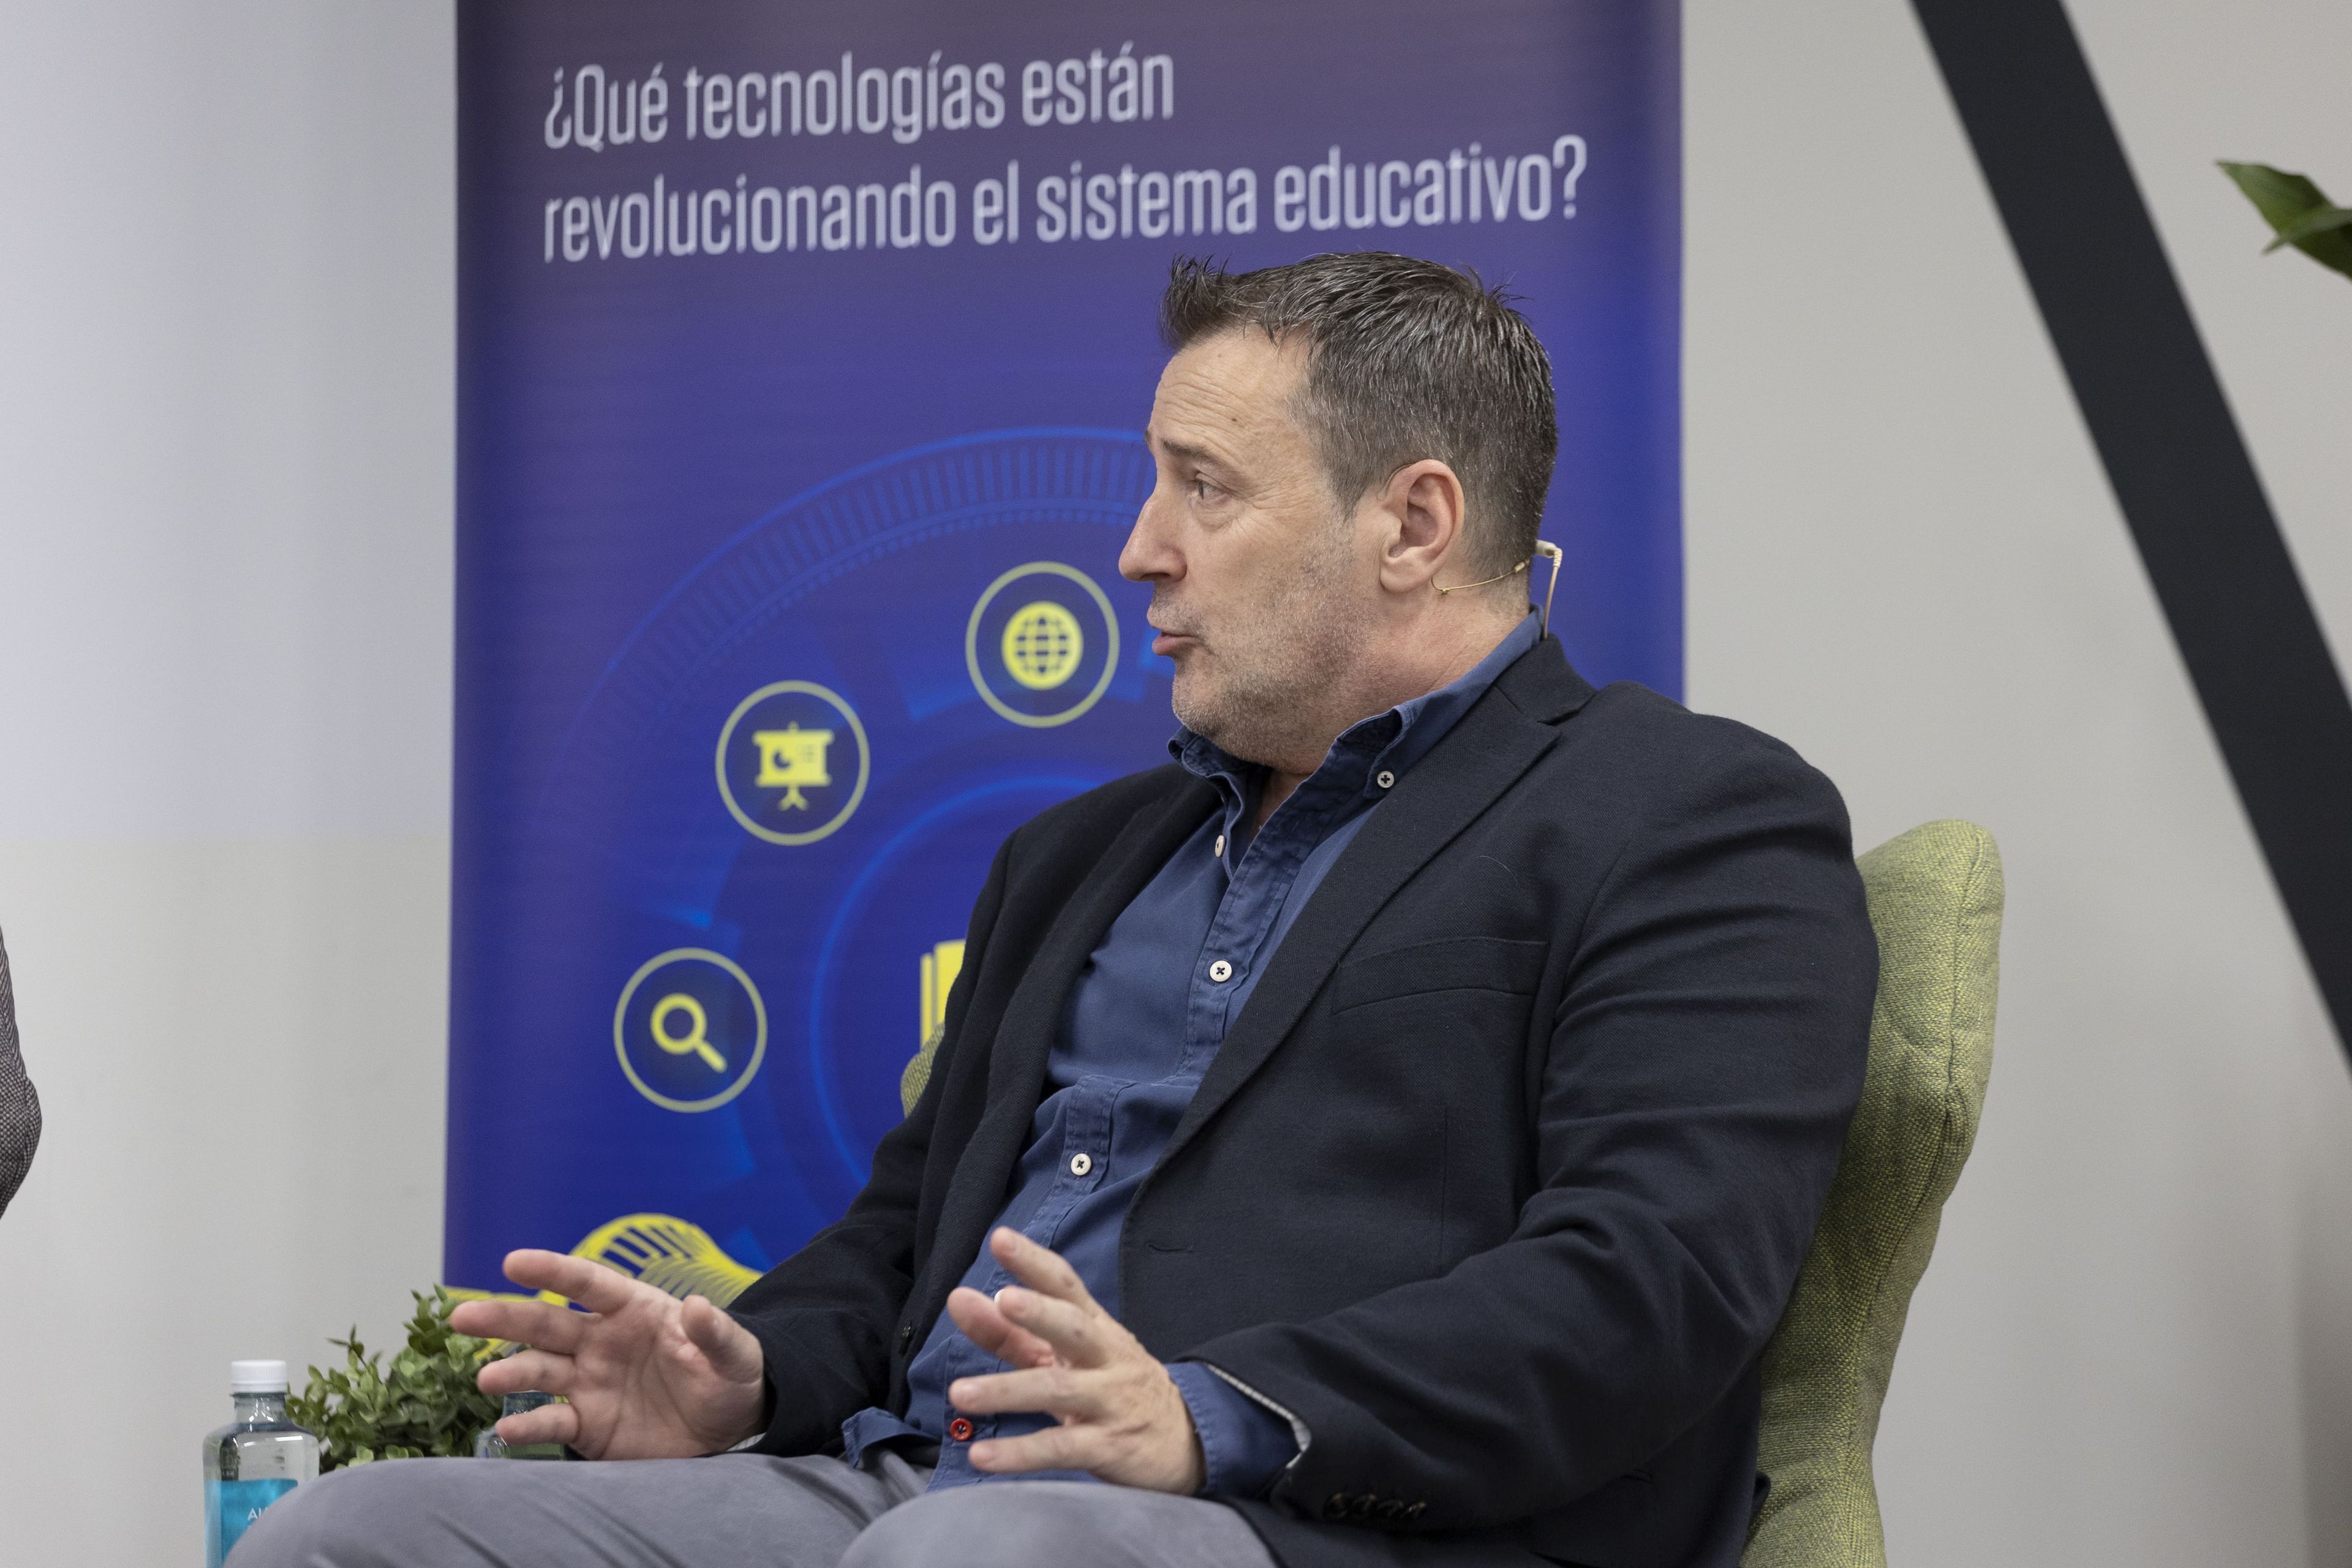 José Luis Fernández, jefe del servicio de experimentación educativa del Instituto Nacional de Tecnologías Educativas y Formación del Profesorado (INTEF), perteneciente al Ministerio de Educación y Formación Profesional